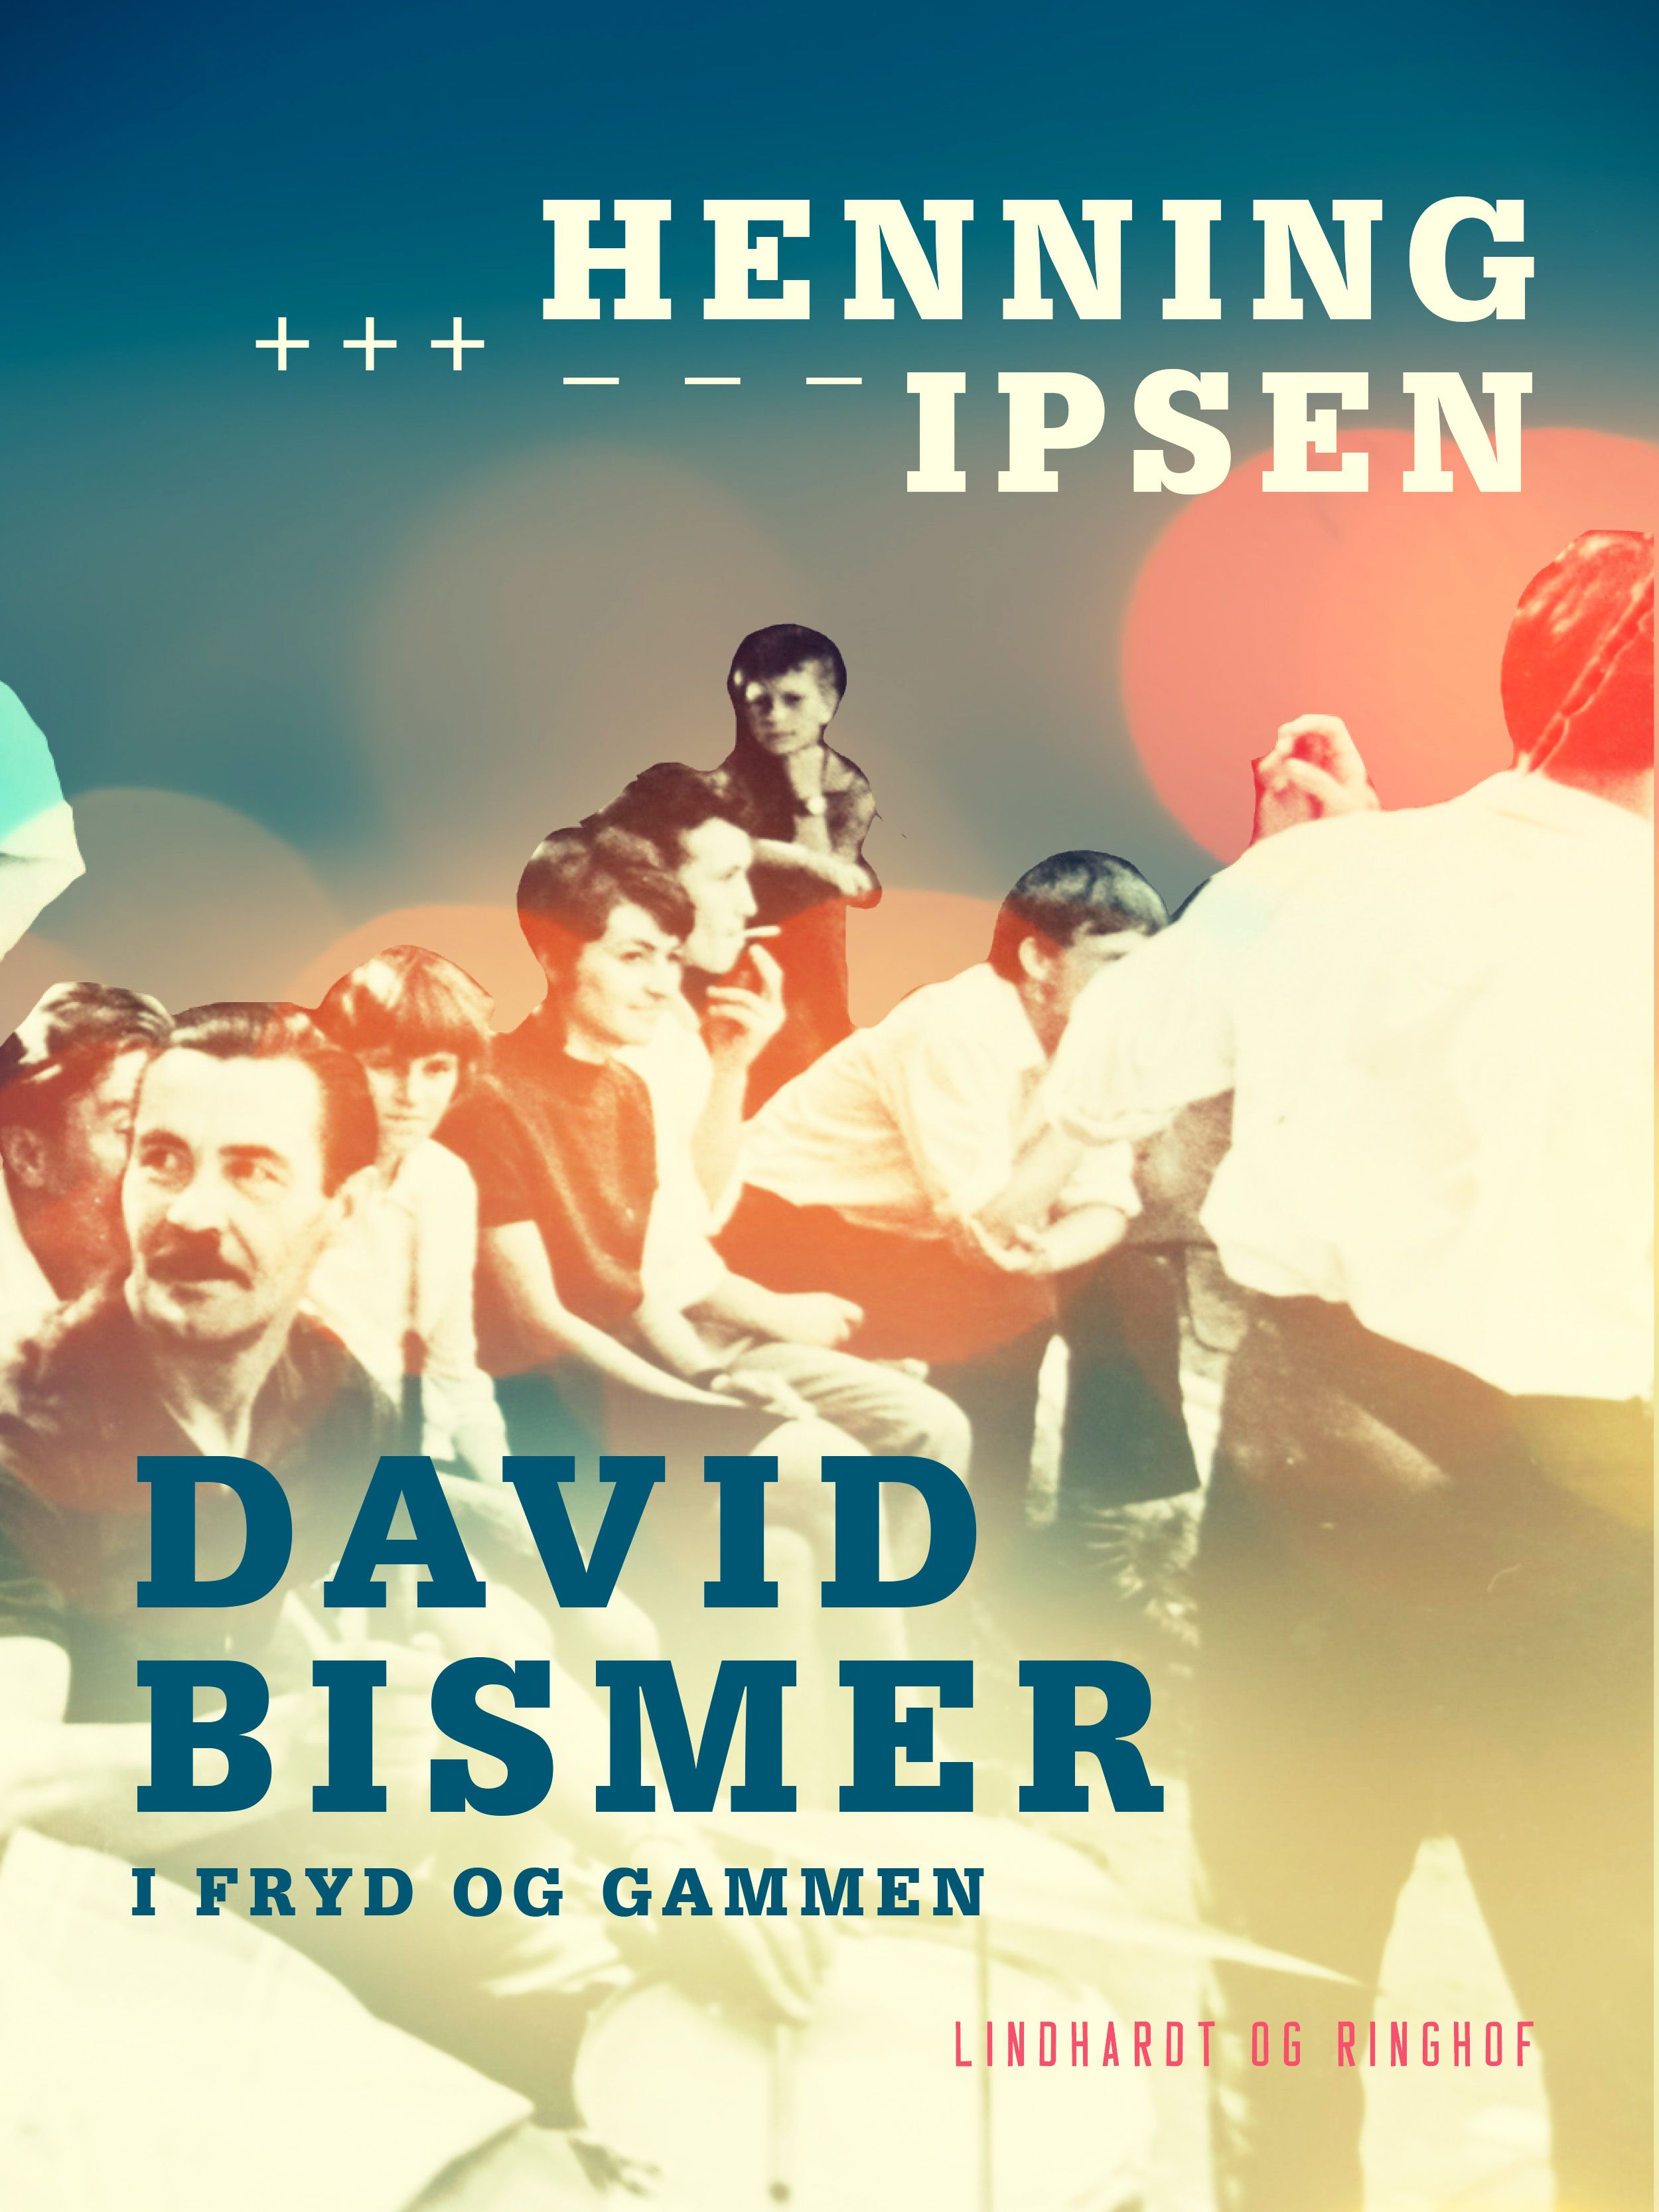 David Bismer i fryd og gammen, e-bog af Henning Ipsen